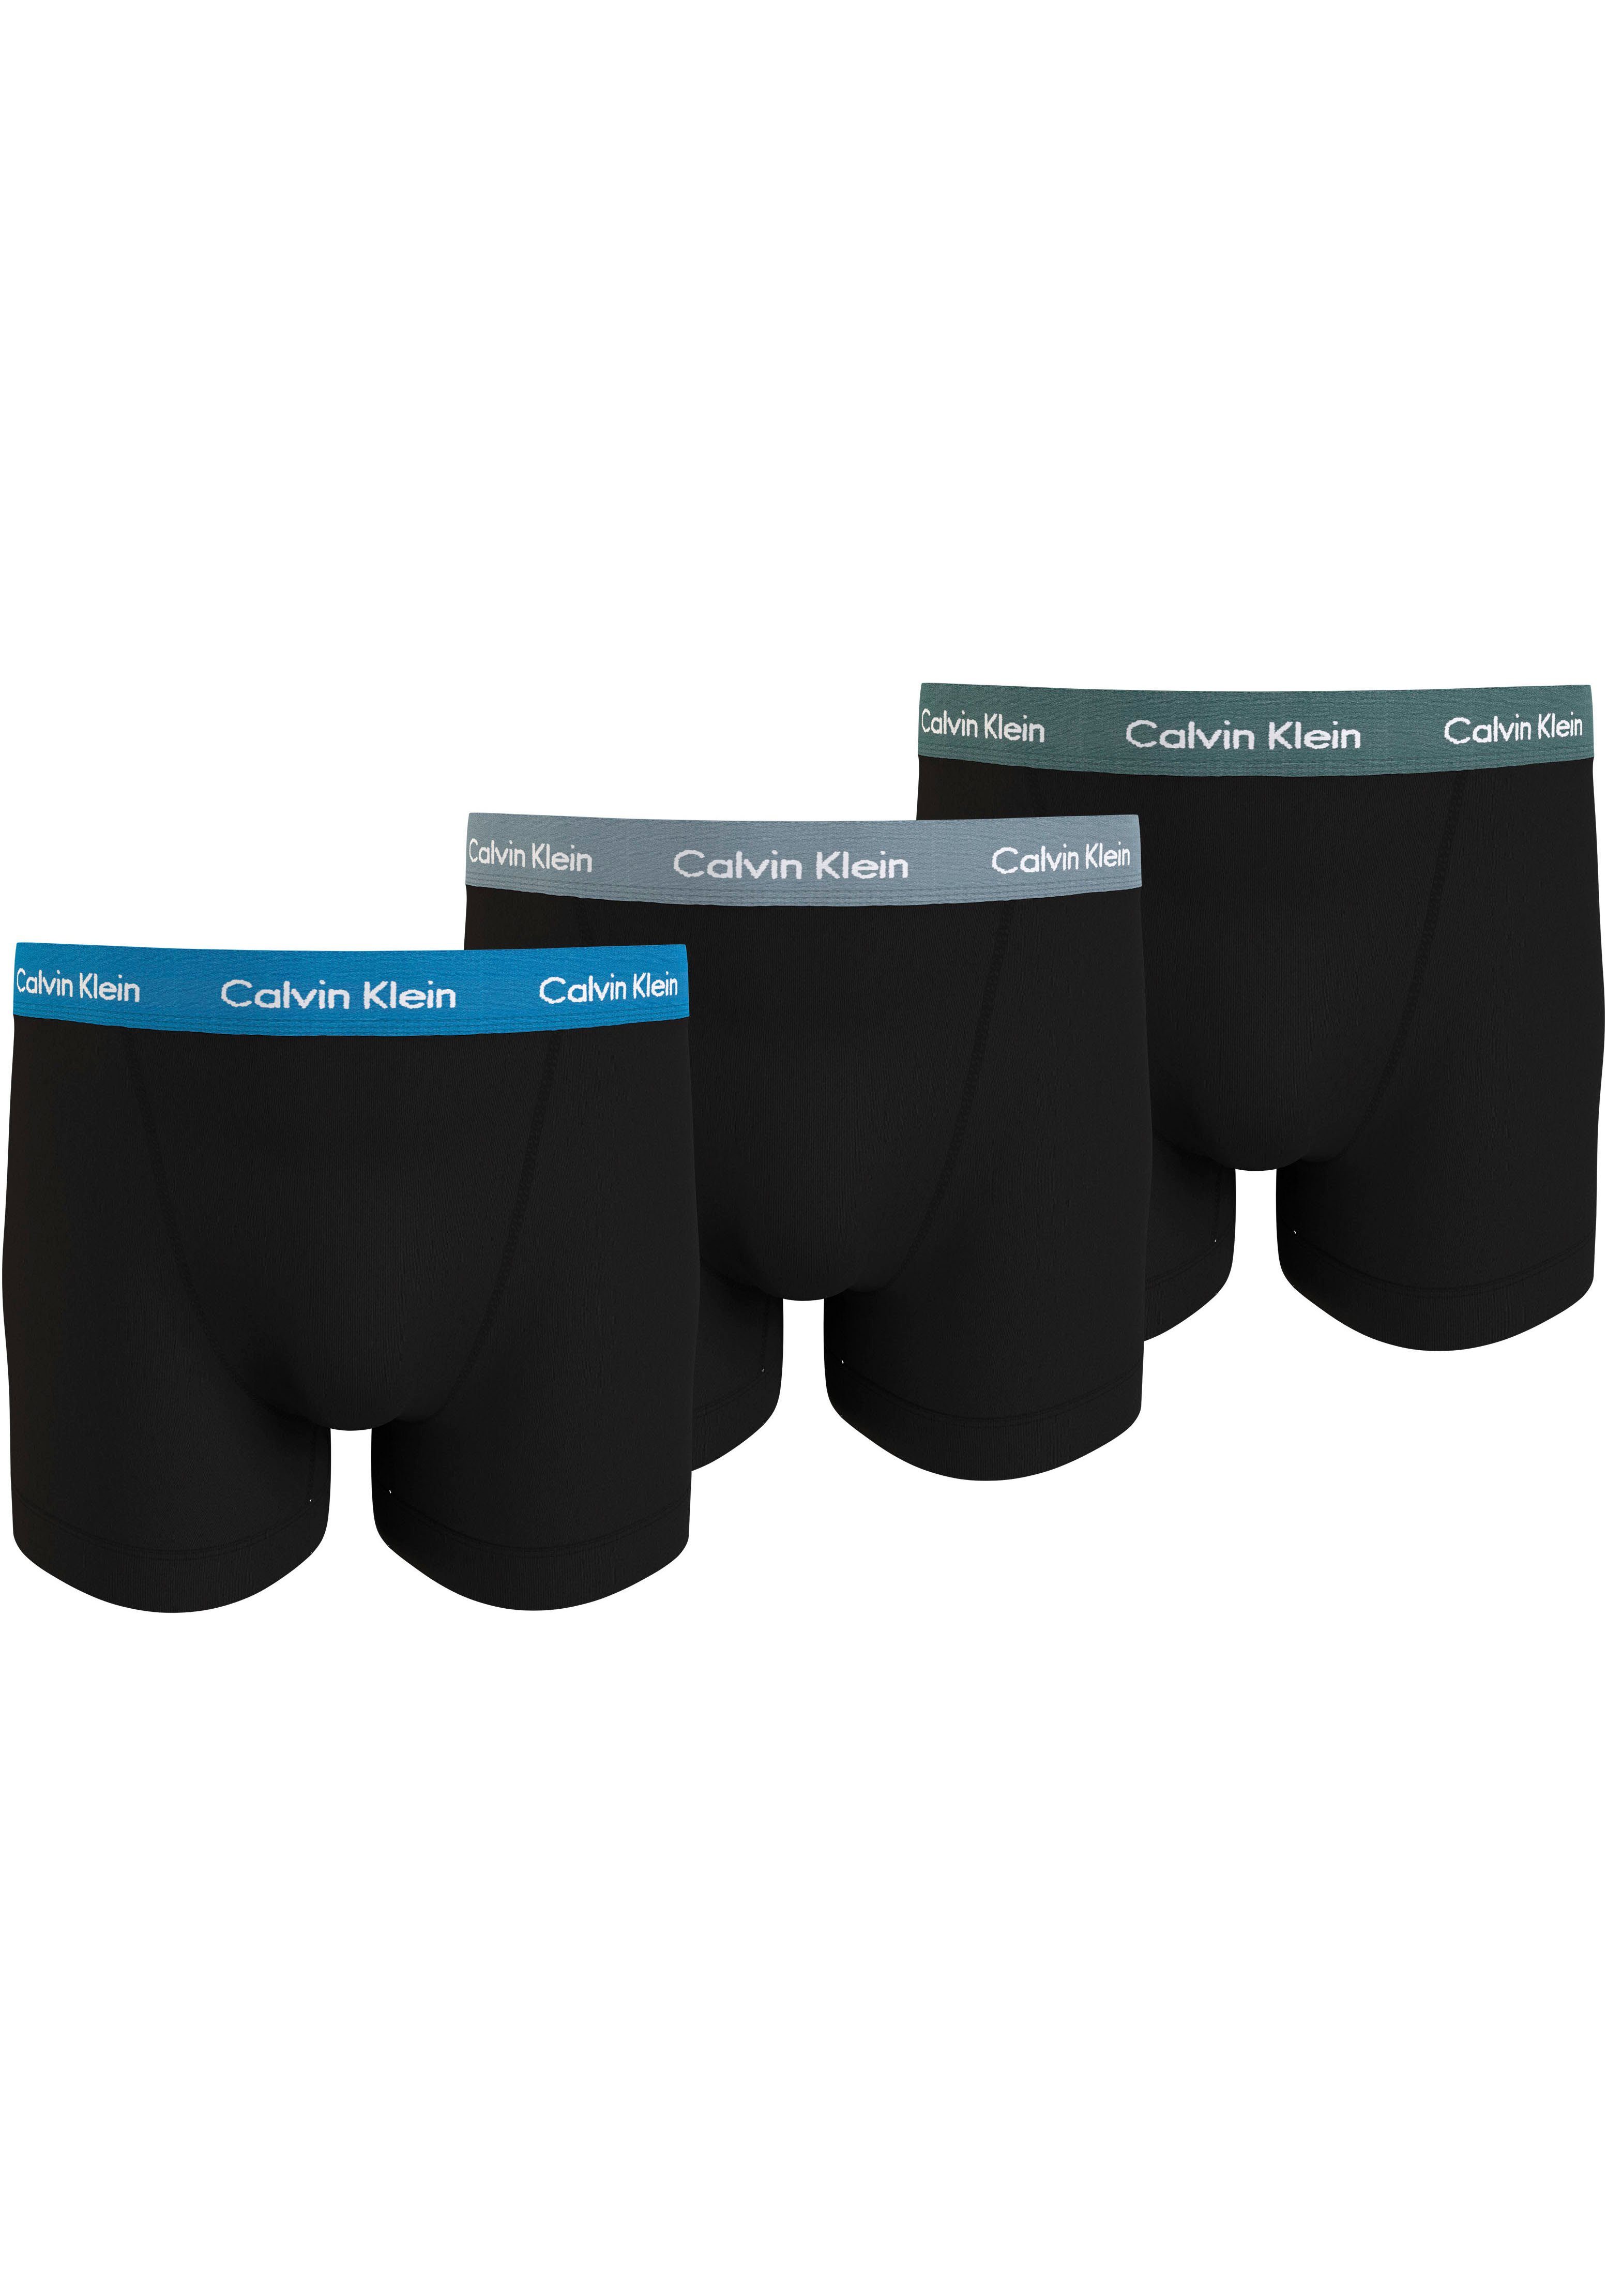 Calvin Klein Underwear Boxershort met band met label in een set van 3 stuks